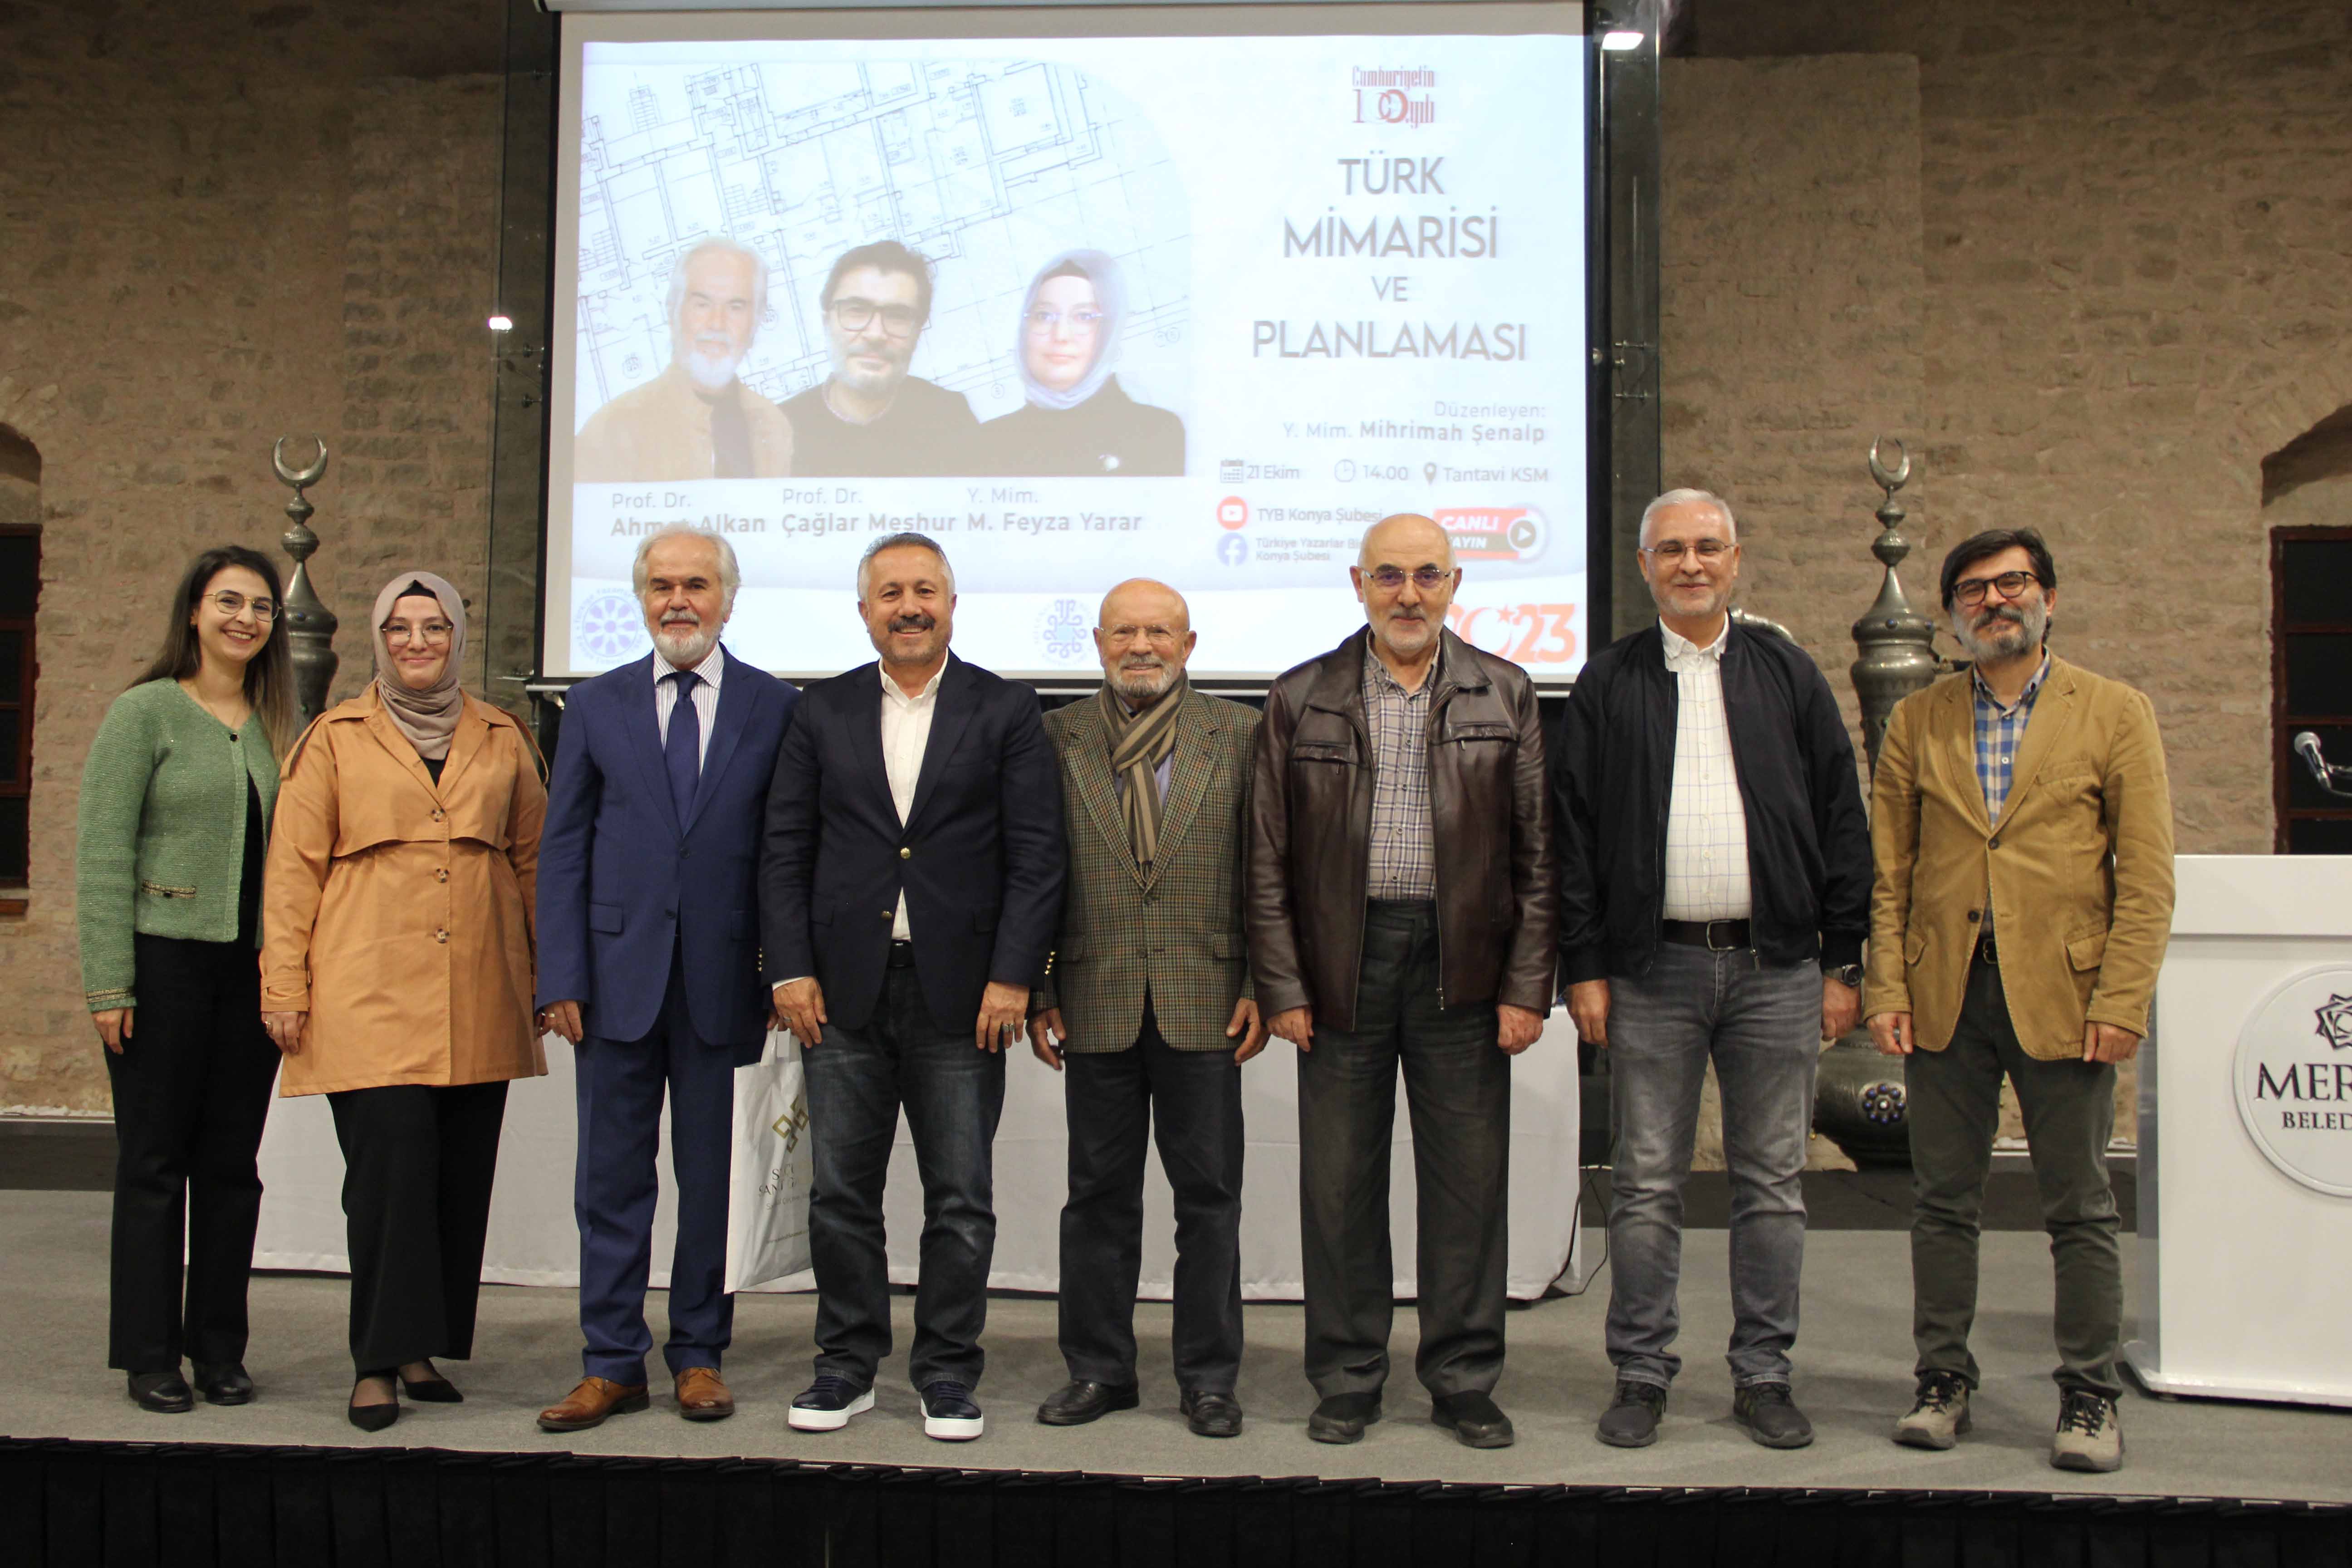 Cumhuriyetin 100. Yılında Türk Mimarisi ve Planlaması